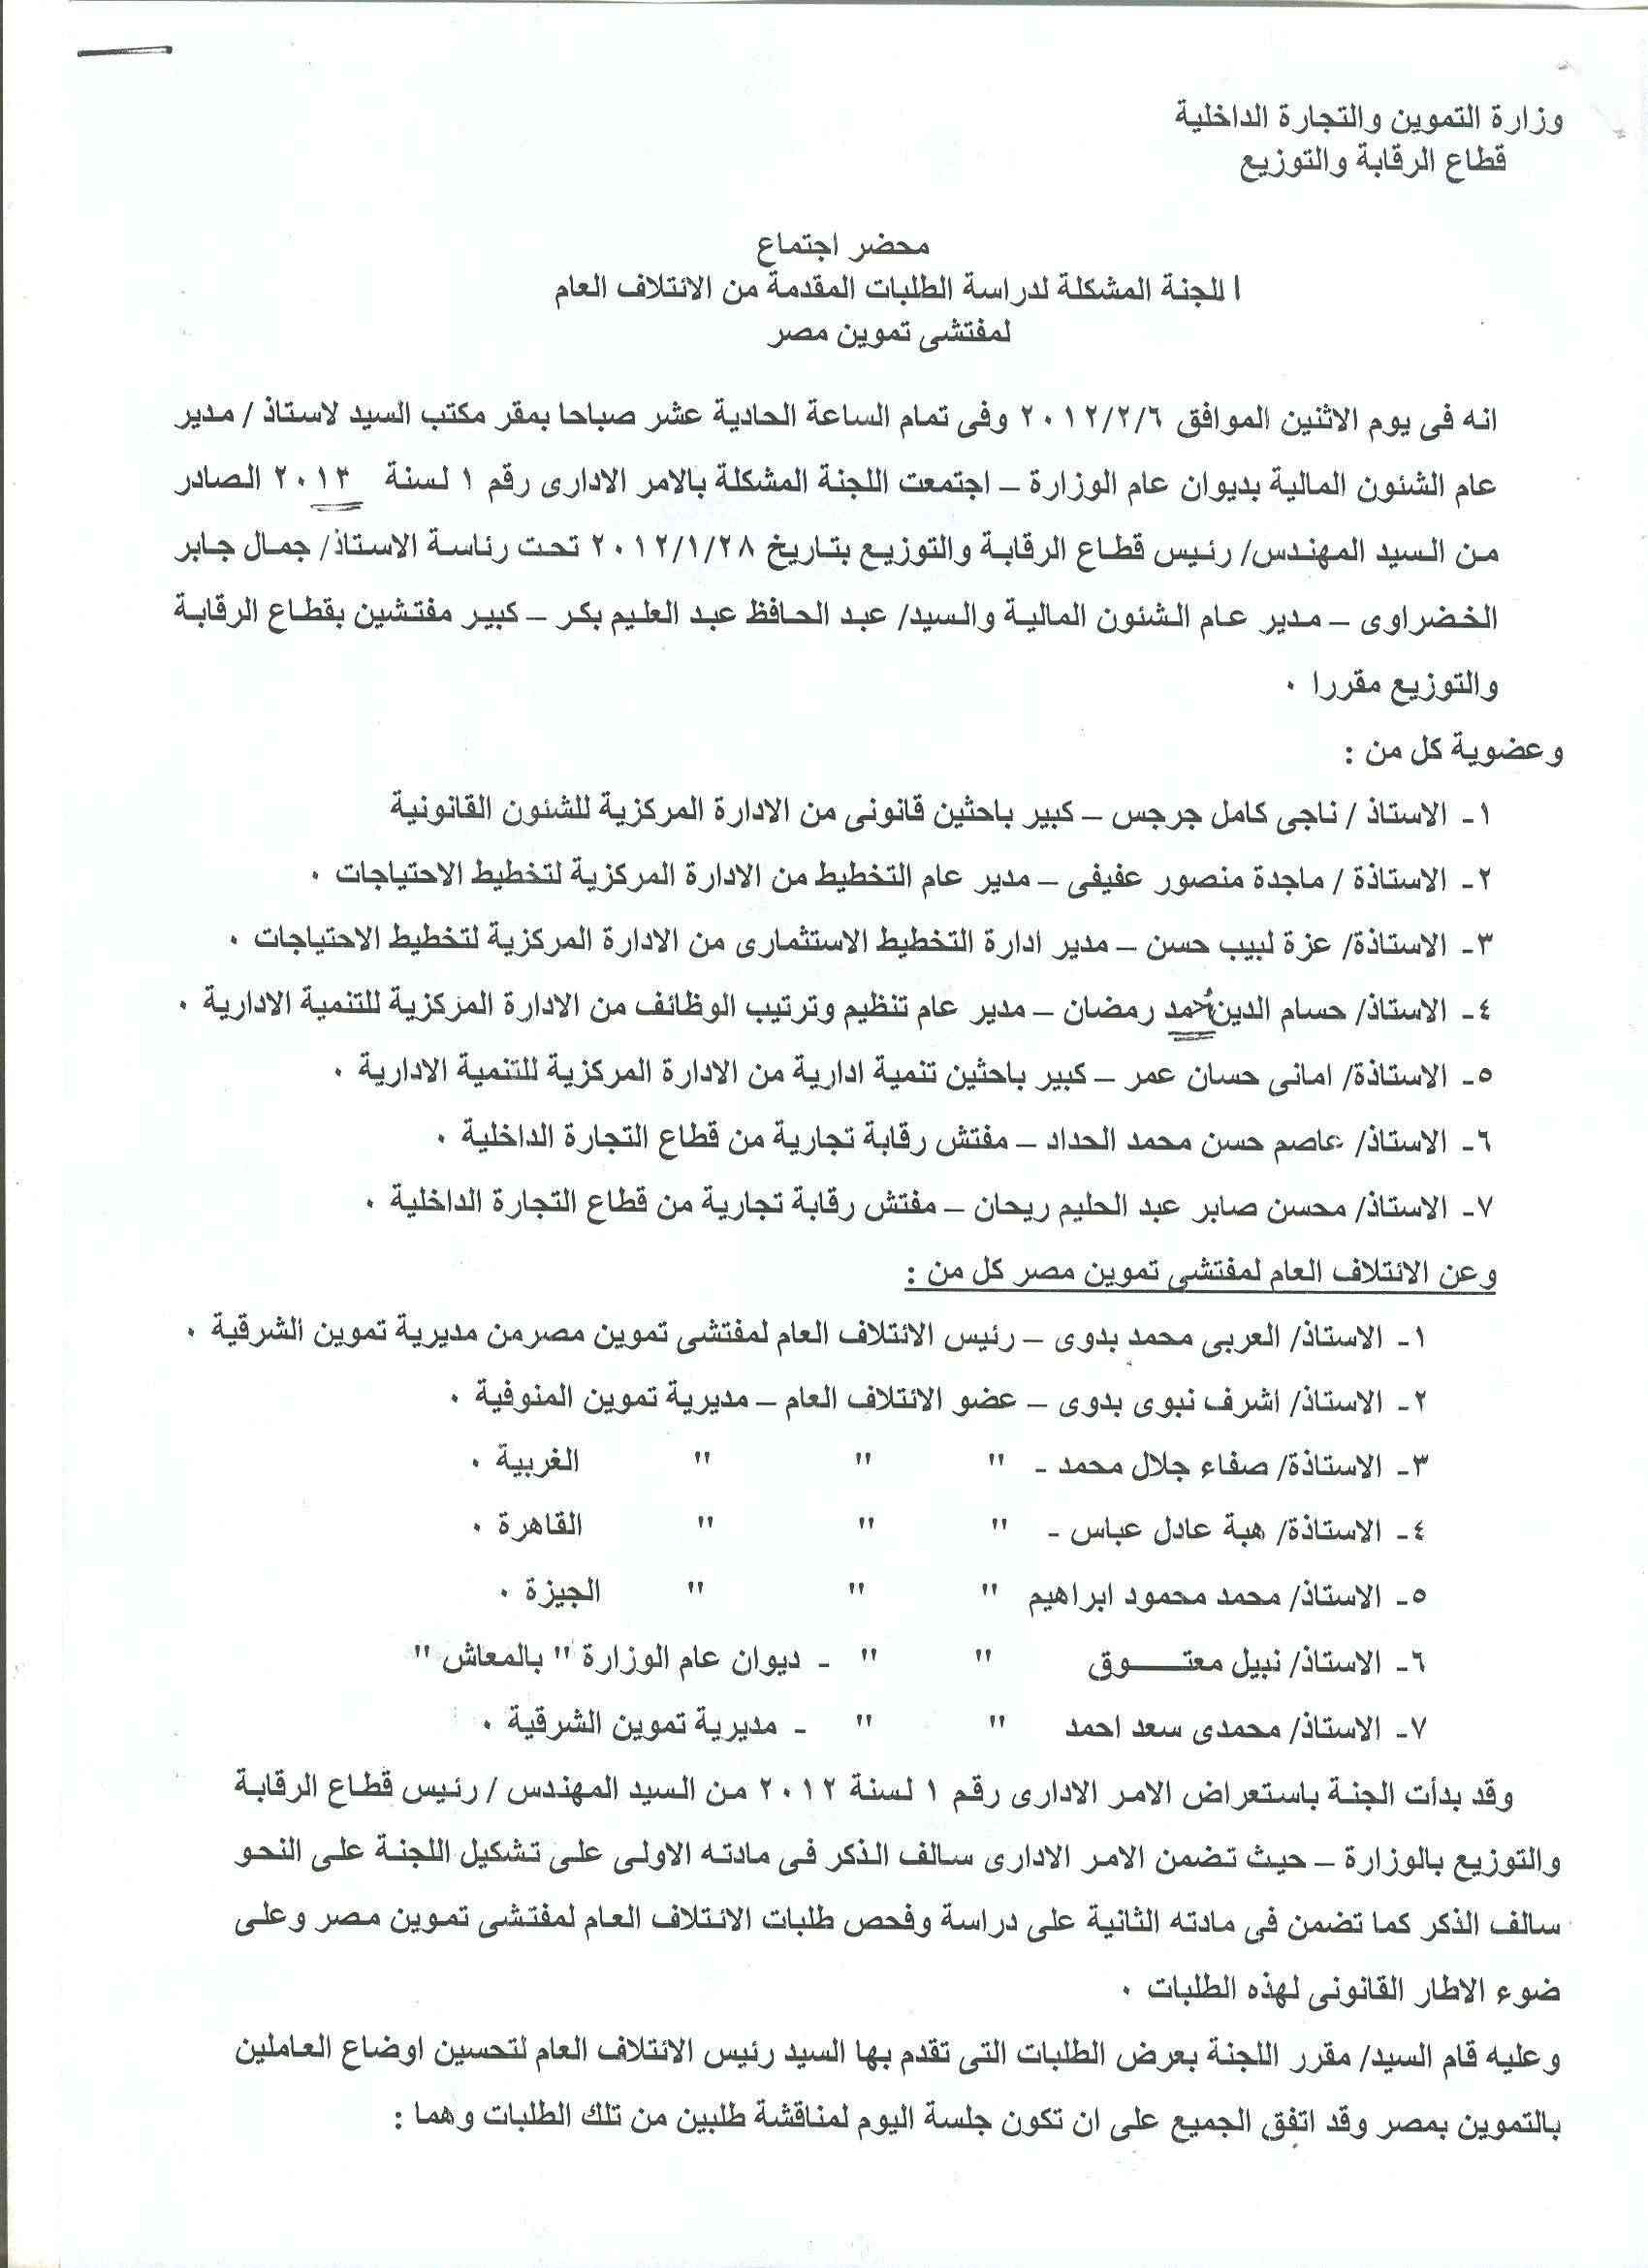 أعمال لجنة الإئتلاف العام للعاملين بتموين مصر بالوزاره خلال شهر فبراير 2012 - صفحة 2 6-110